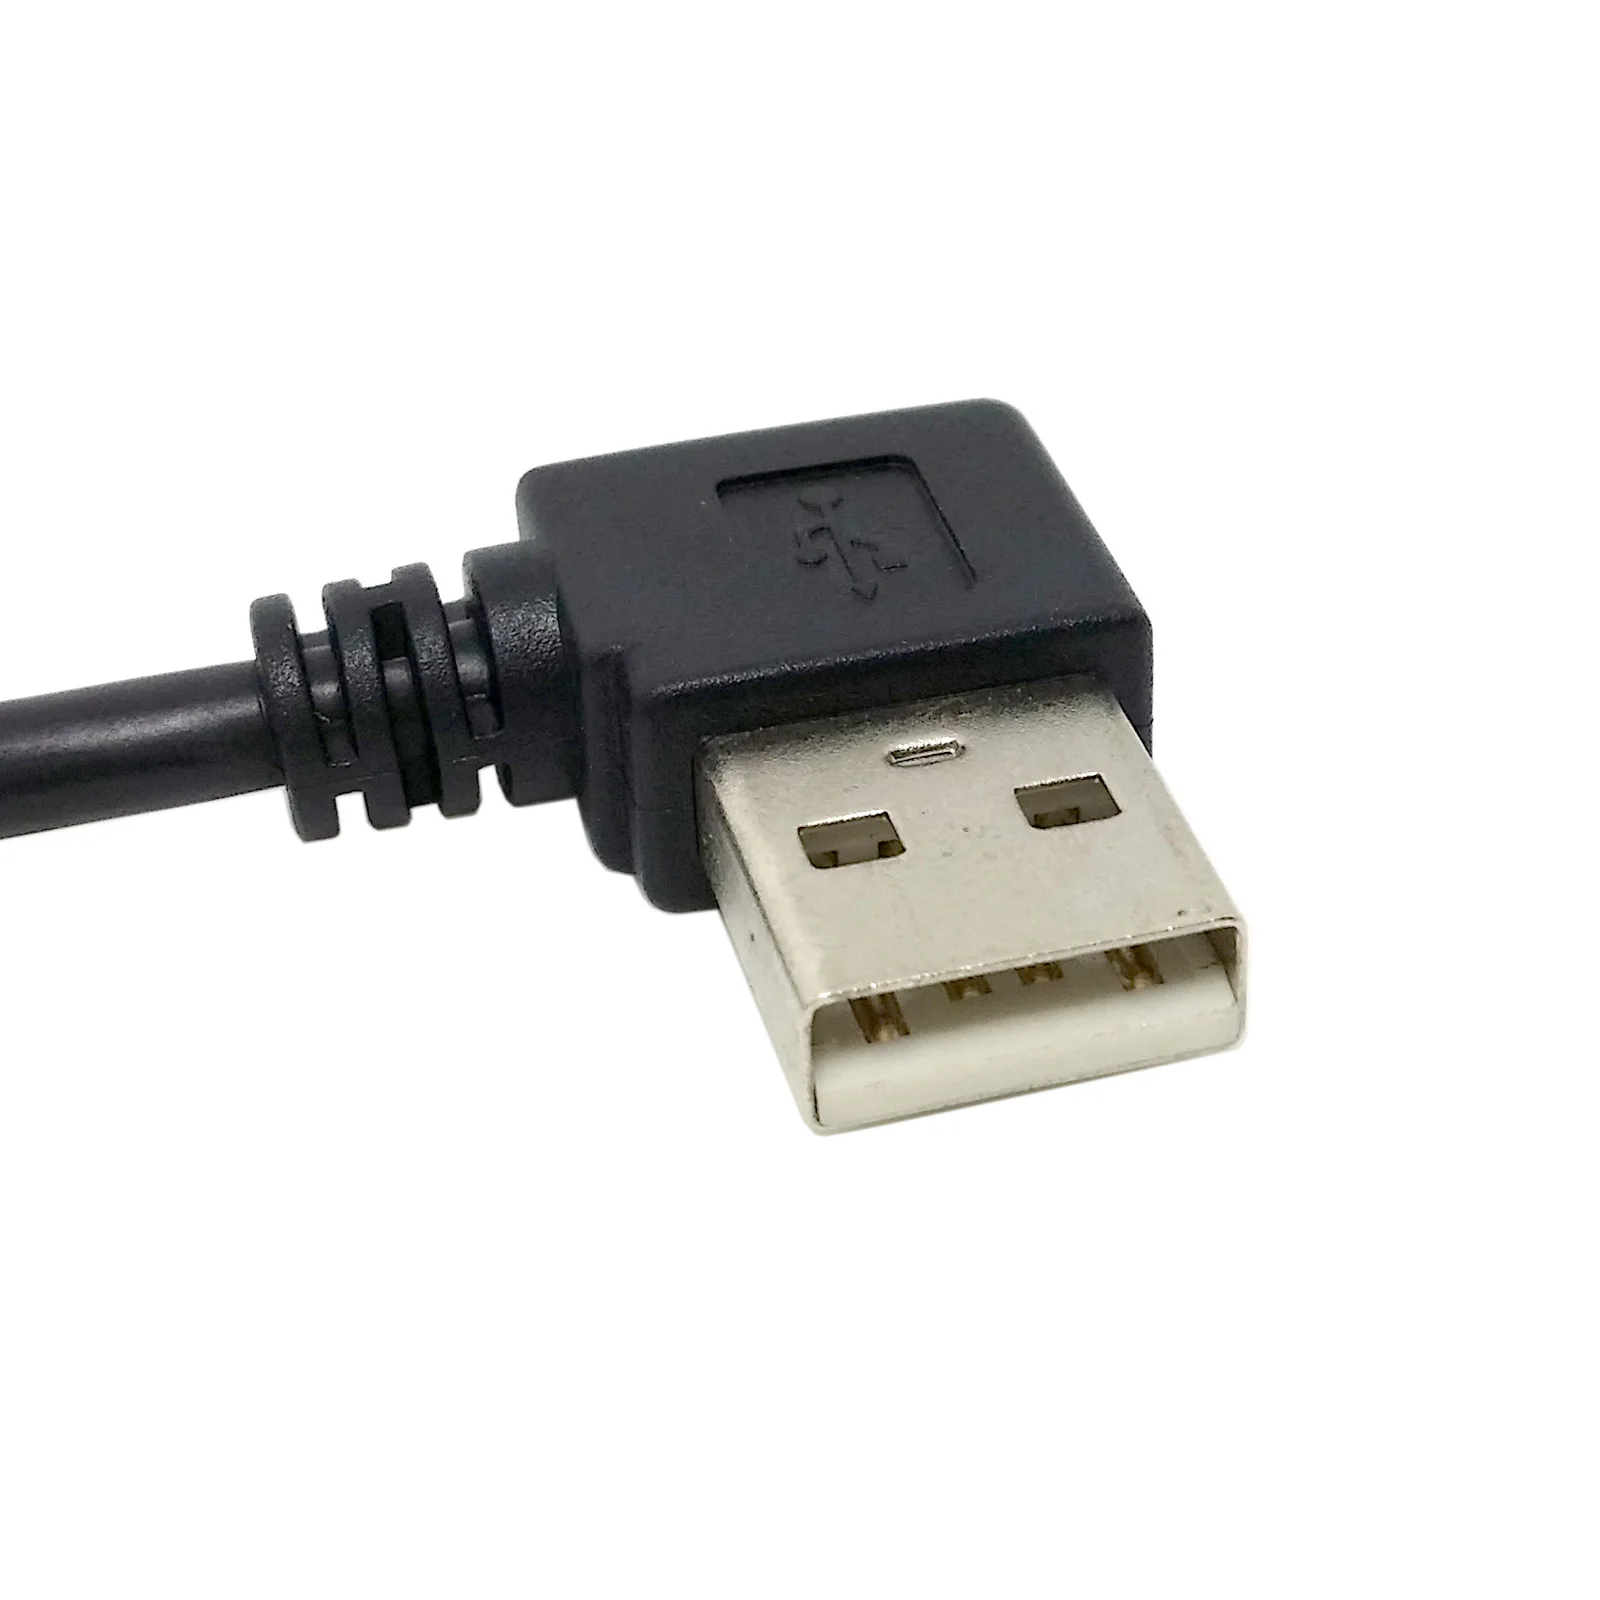 CableCC USB 2.0 A Moški Desno pod Kotom 90 Stopinj na USB Mini B Moški Kabel 50 cm Črne Barve